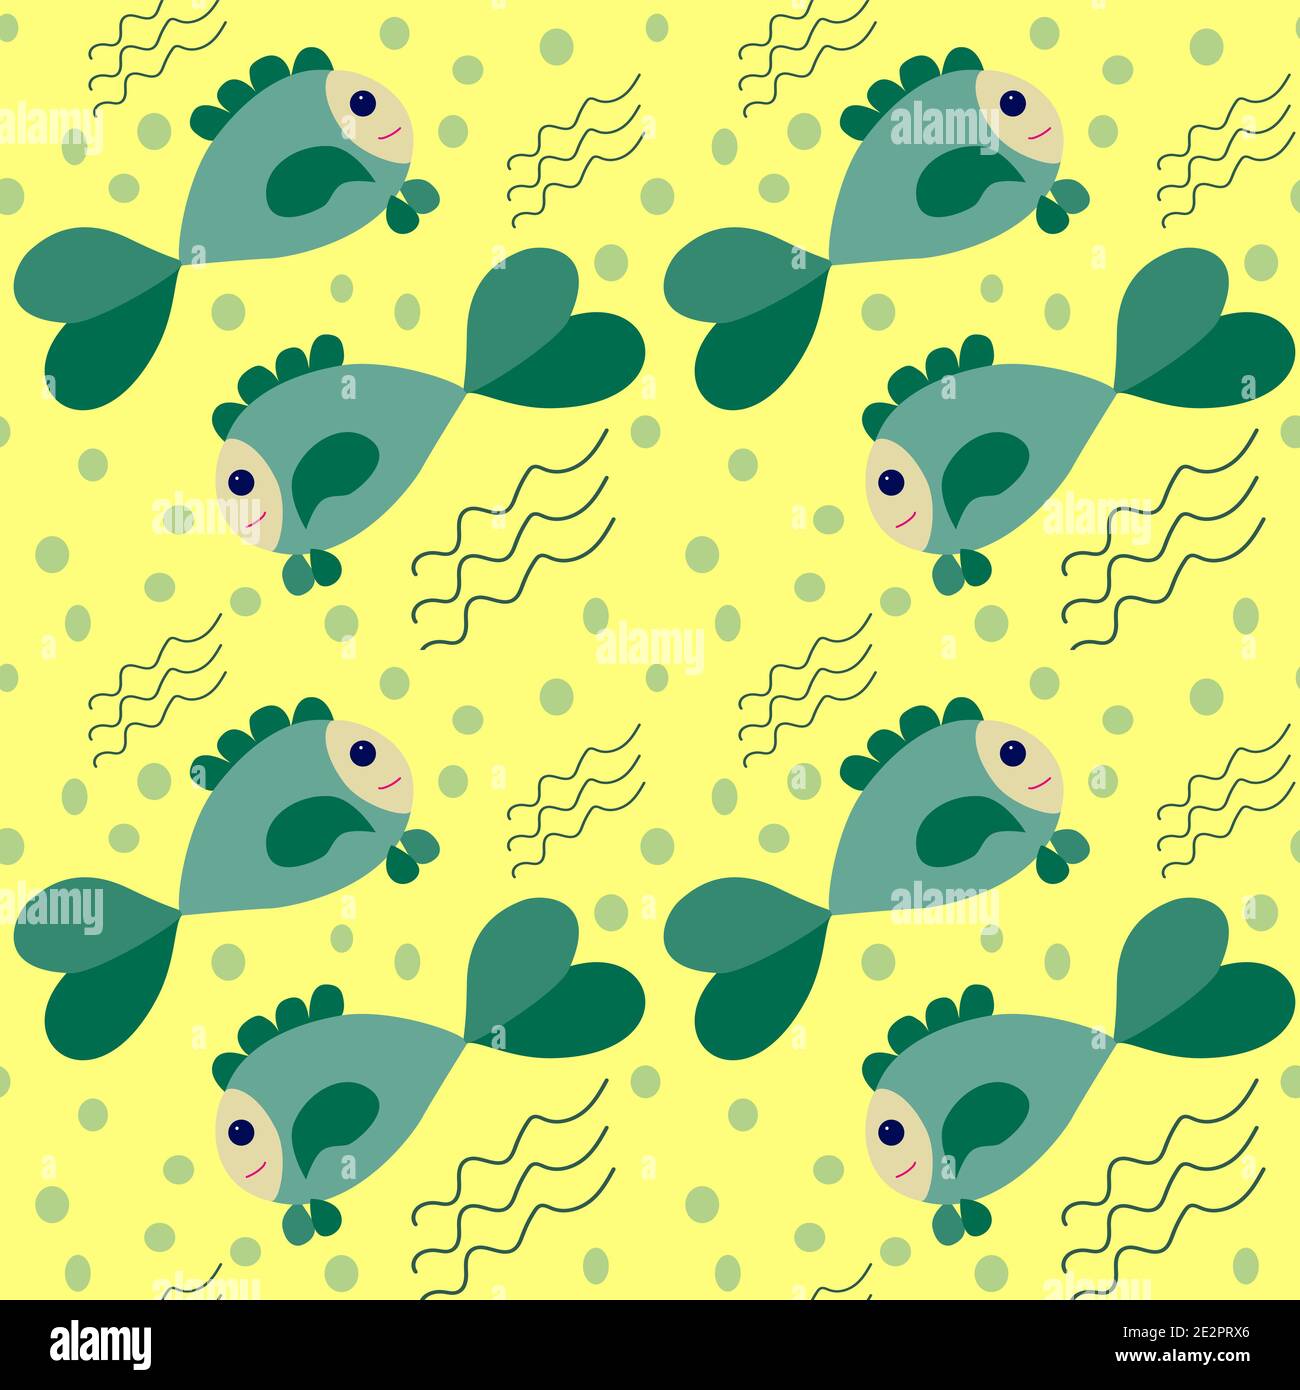 motif sans couture vert et émeraude dessinés poisson drôle, bulles bleues et lignes ondulées sur fond jaune Illustration de Vecteur